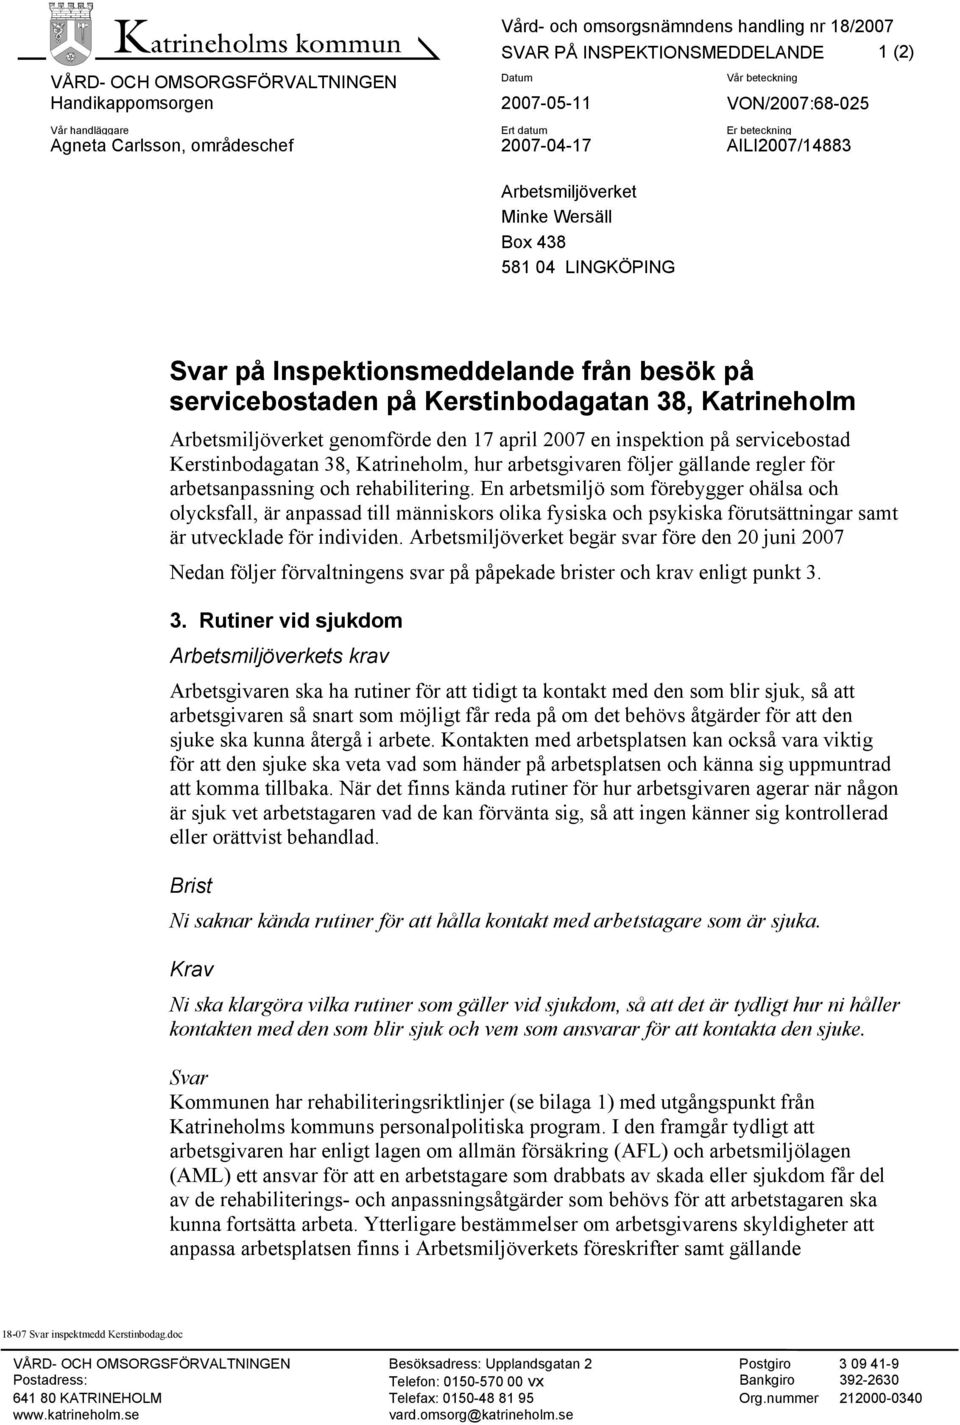 Kerstinbodagatan 38, Katrineholm Arbetsmiljöverket genomförde den 17 april 2007 en inspektion på servicebostad Kerstinbodagatan 38, Katrineholm, hur arbetsgivaren följer gällande regler för